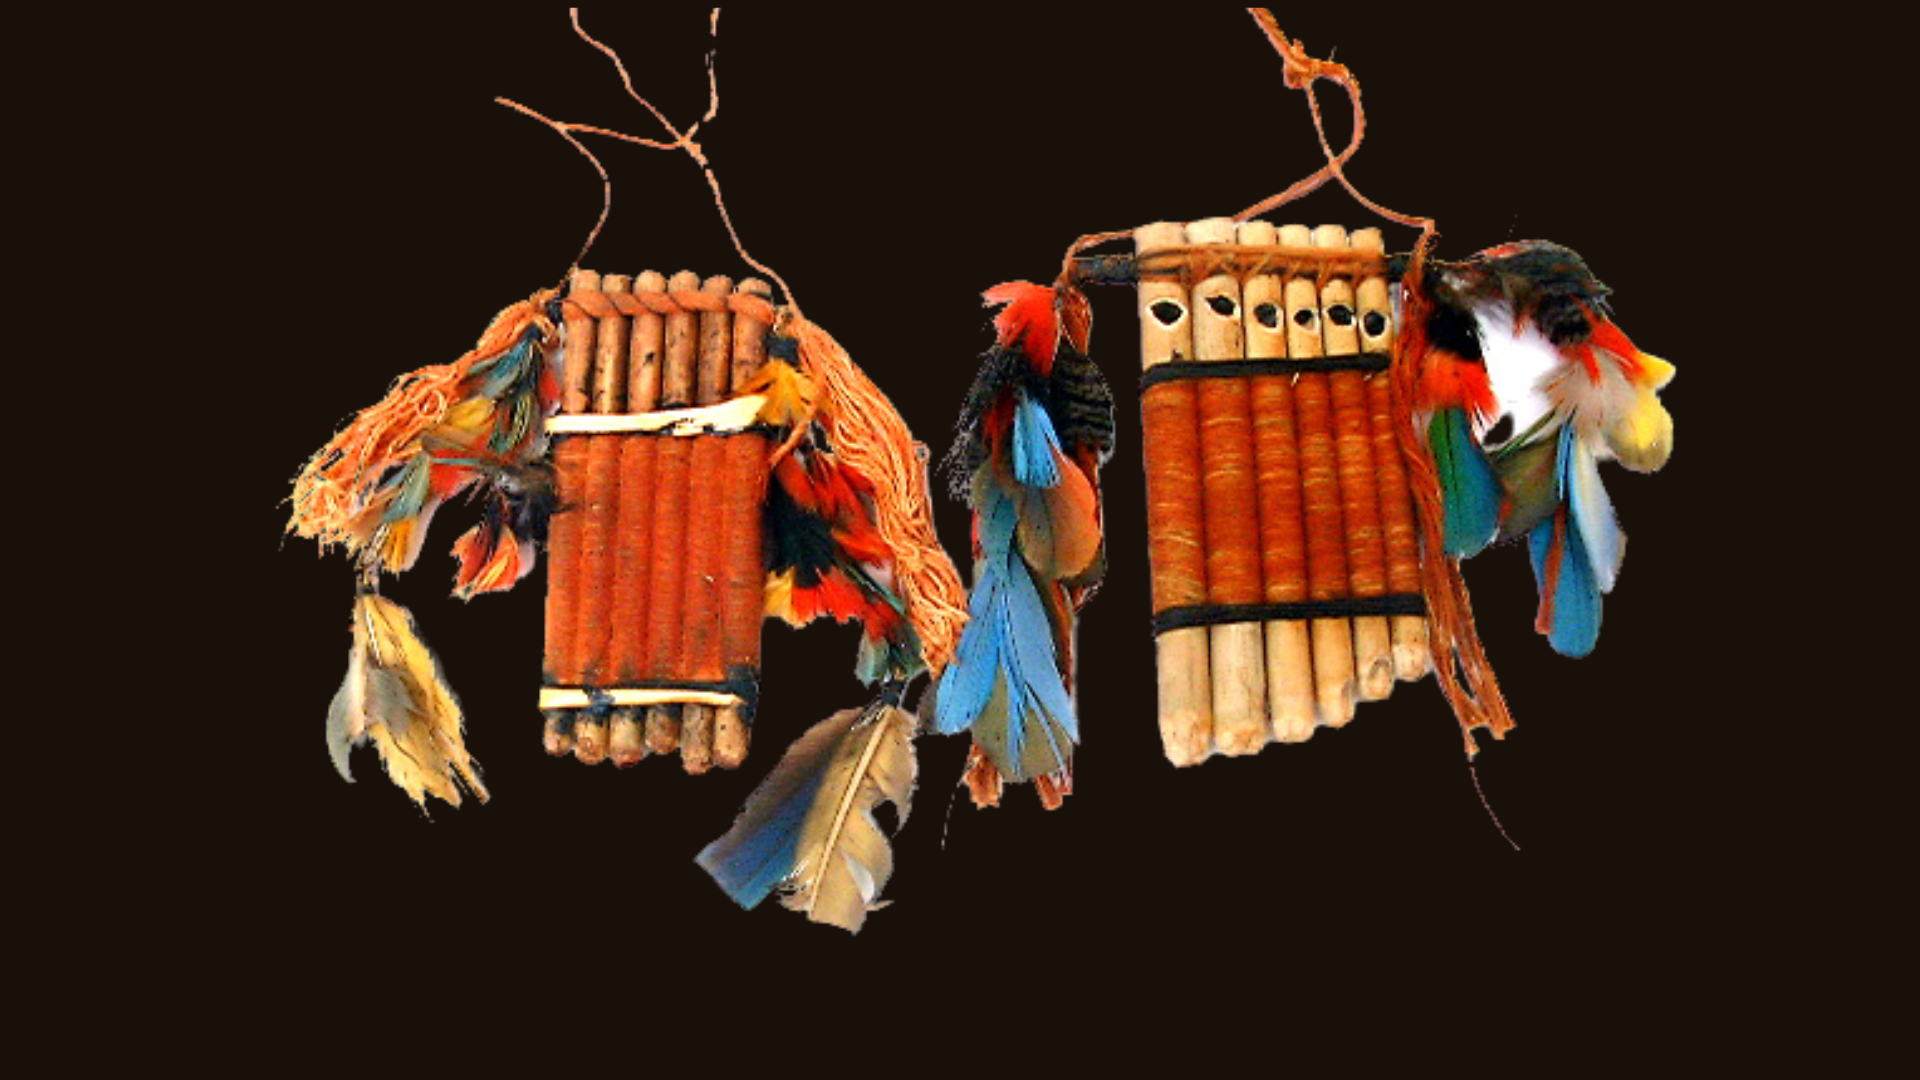 Museu Nacional dos Povos Indígenas e Funai conduzem primeira repatriação de uma coleção de itens etnográficos indígenas